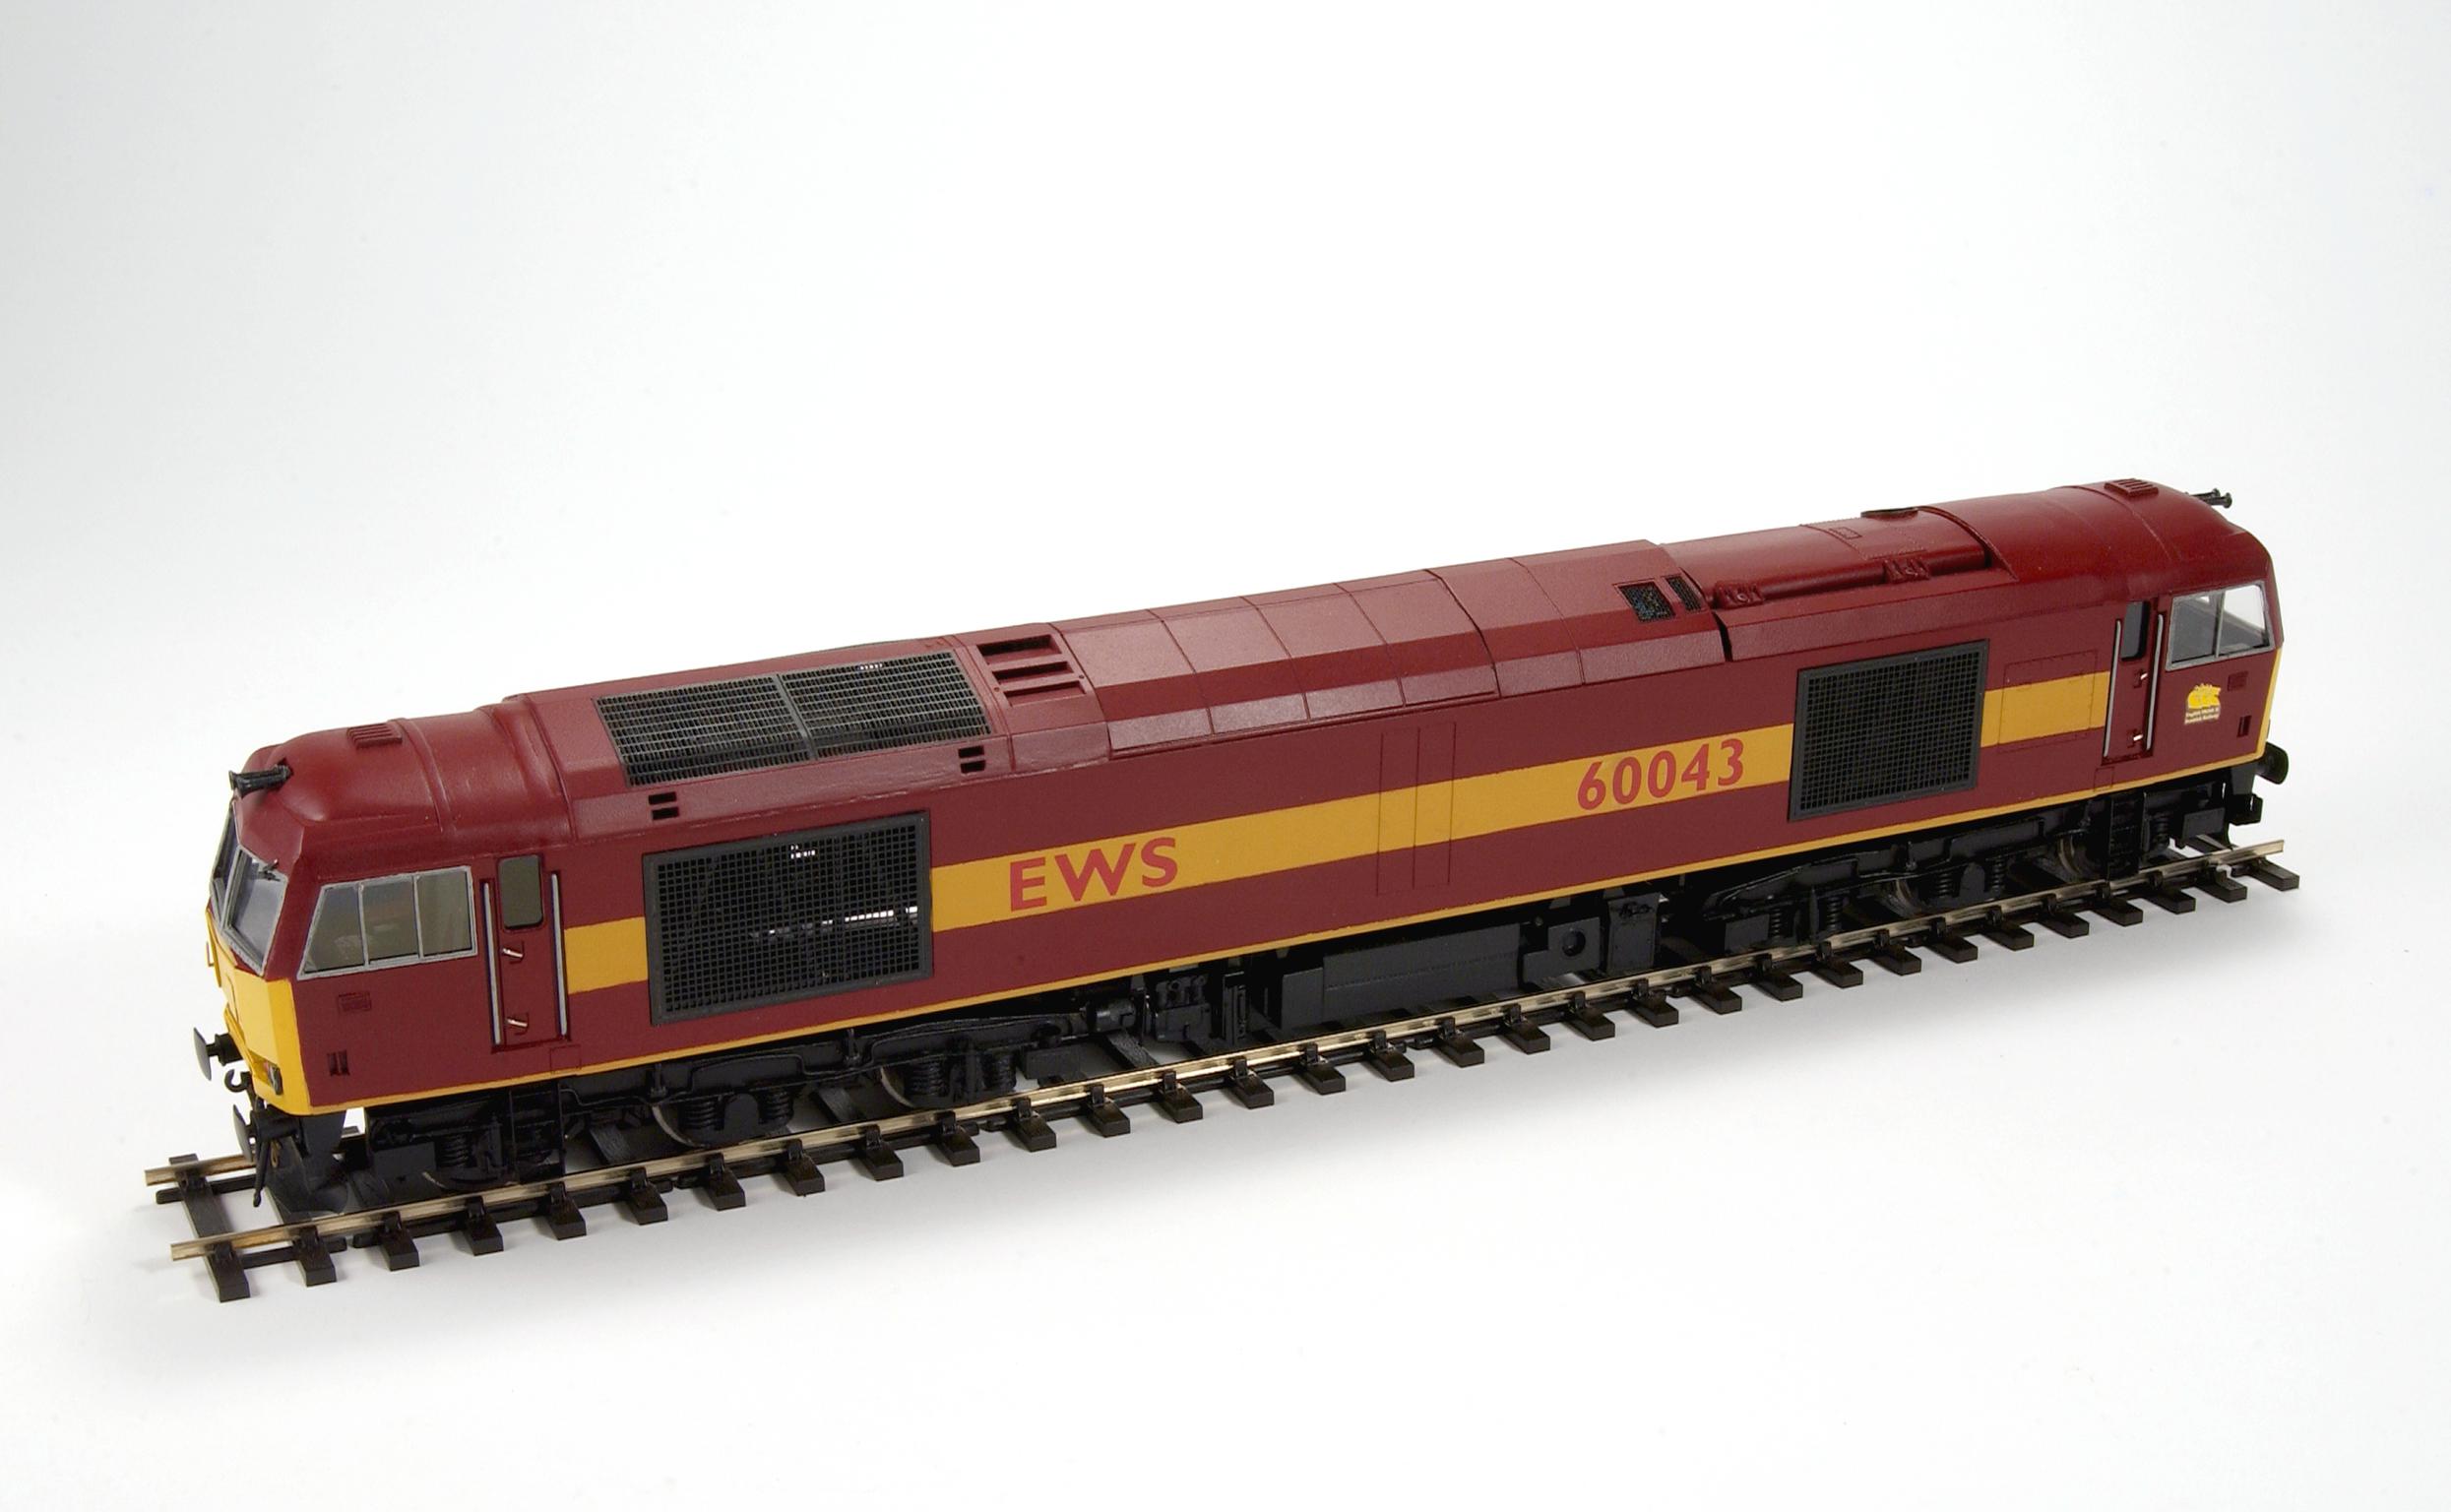 Type 60 diesel locomotive, model